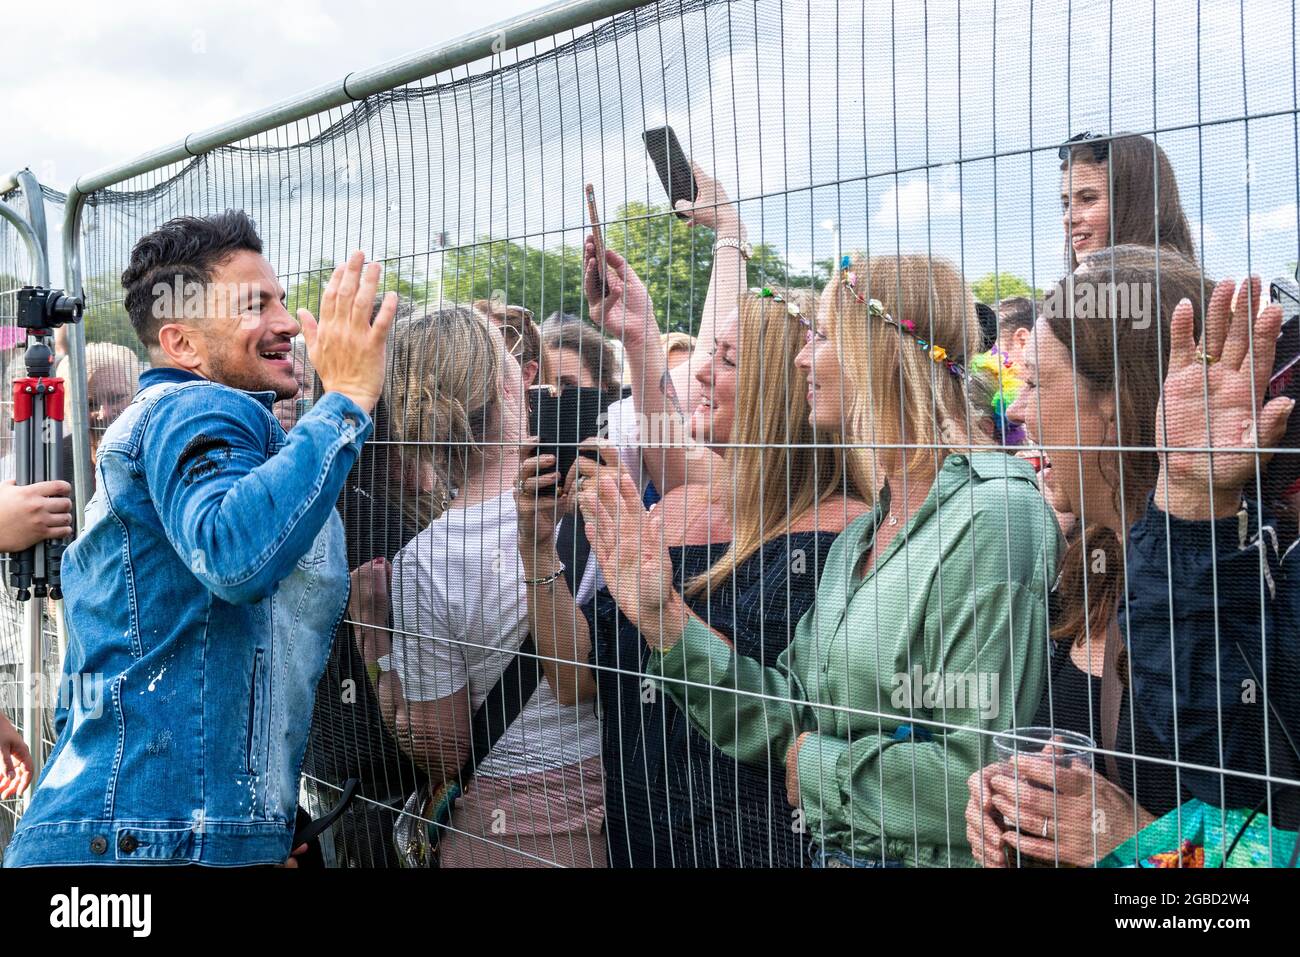 Peter Andre trifft sich anbetende Fans beim Fantasia-Musikkonzert in Maldon, Essex, Großbritannien, kurz nach Aufhebung der COVID-Beschränkungen. Durch Zaun getrennt Stockfoto